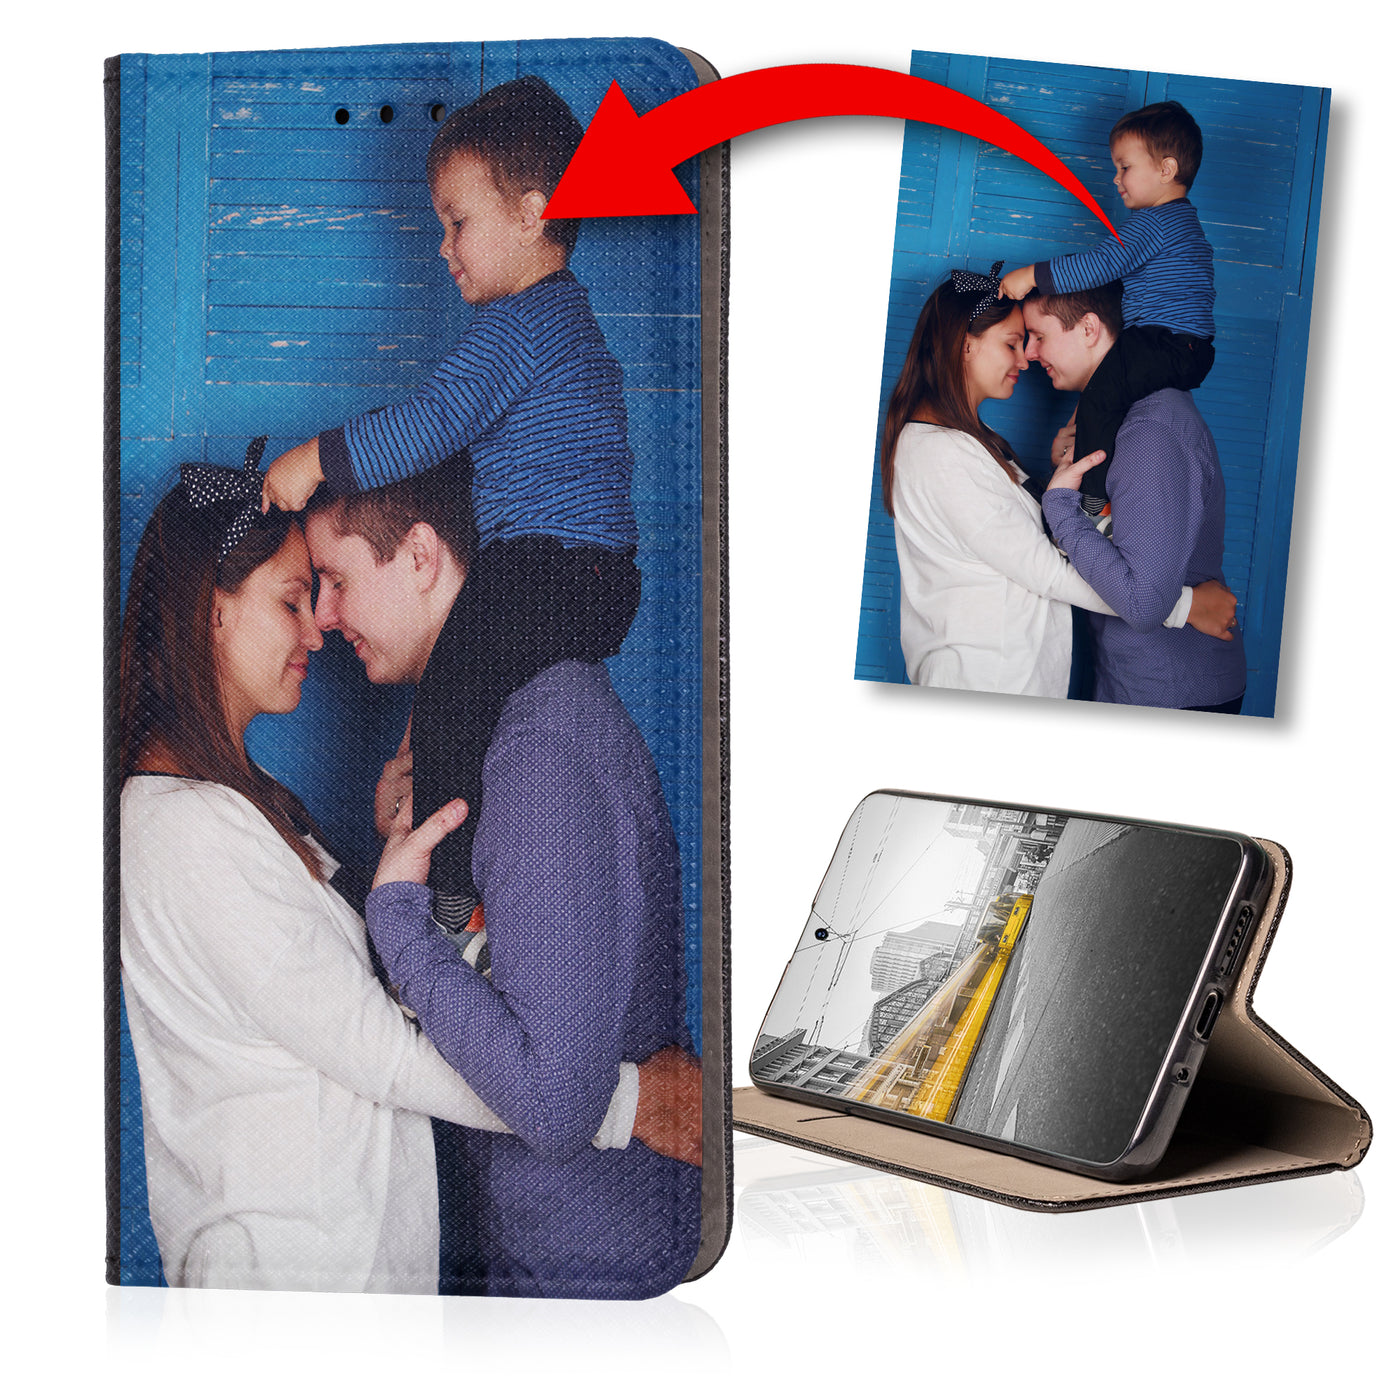 Handyhülle für iPhone 5 / 5s personalisierte Hülle mit eigenem Bild Motiv Design Smart Magnet Klapphülle